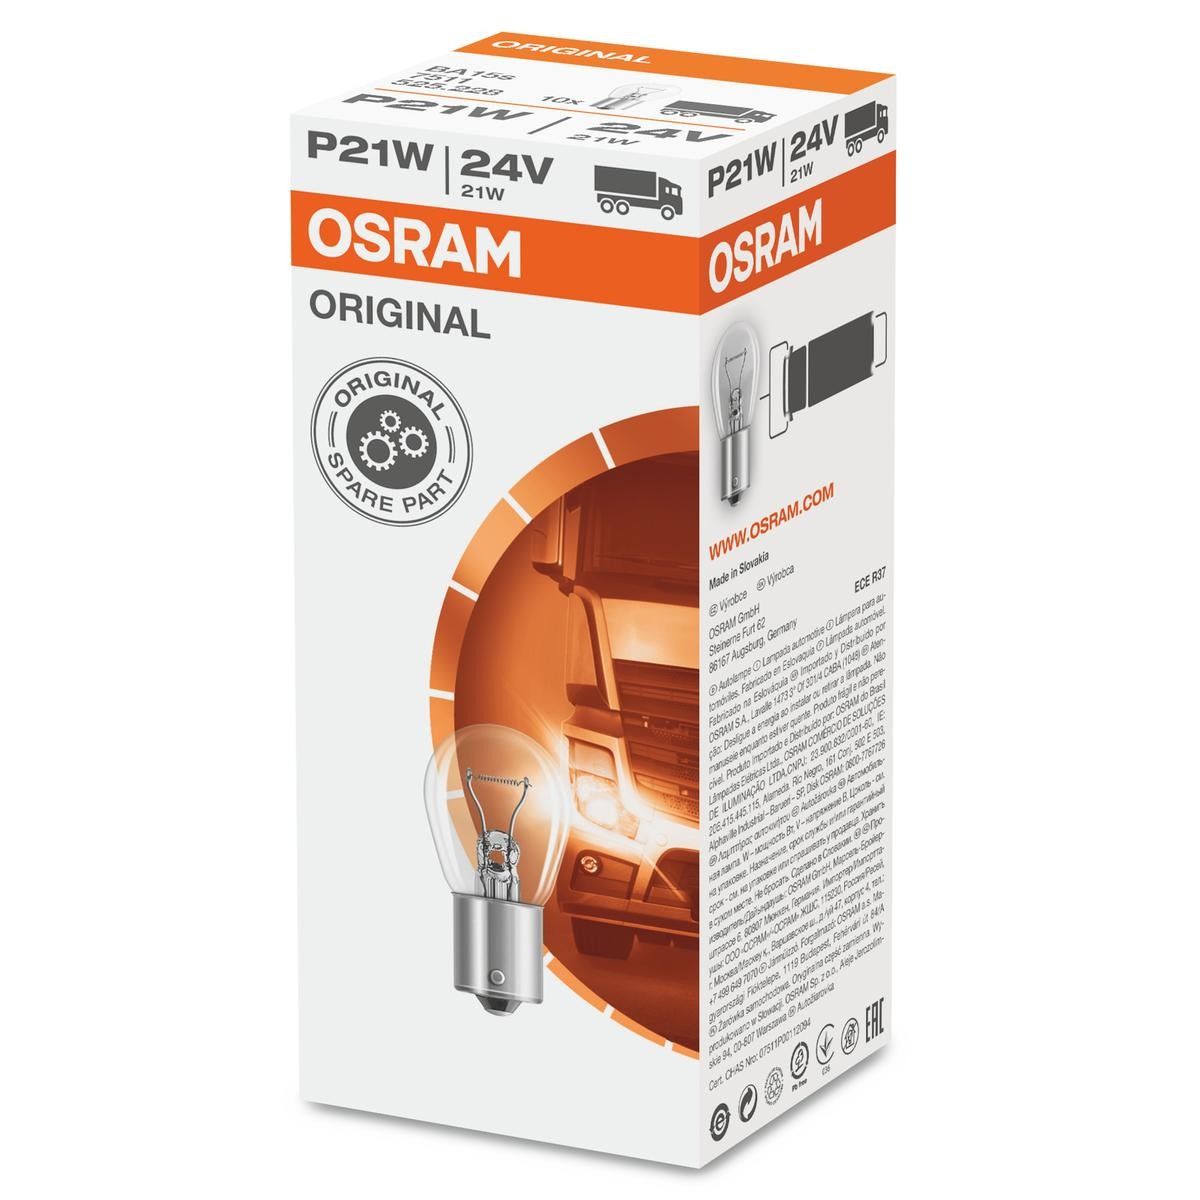 Gloeilamp, knipperlamp 7511 OSRAM P21W van originele kwaliteit